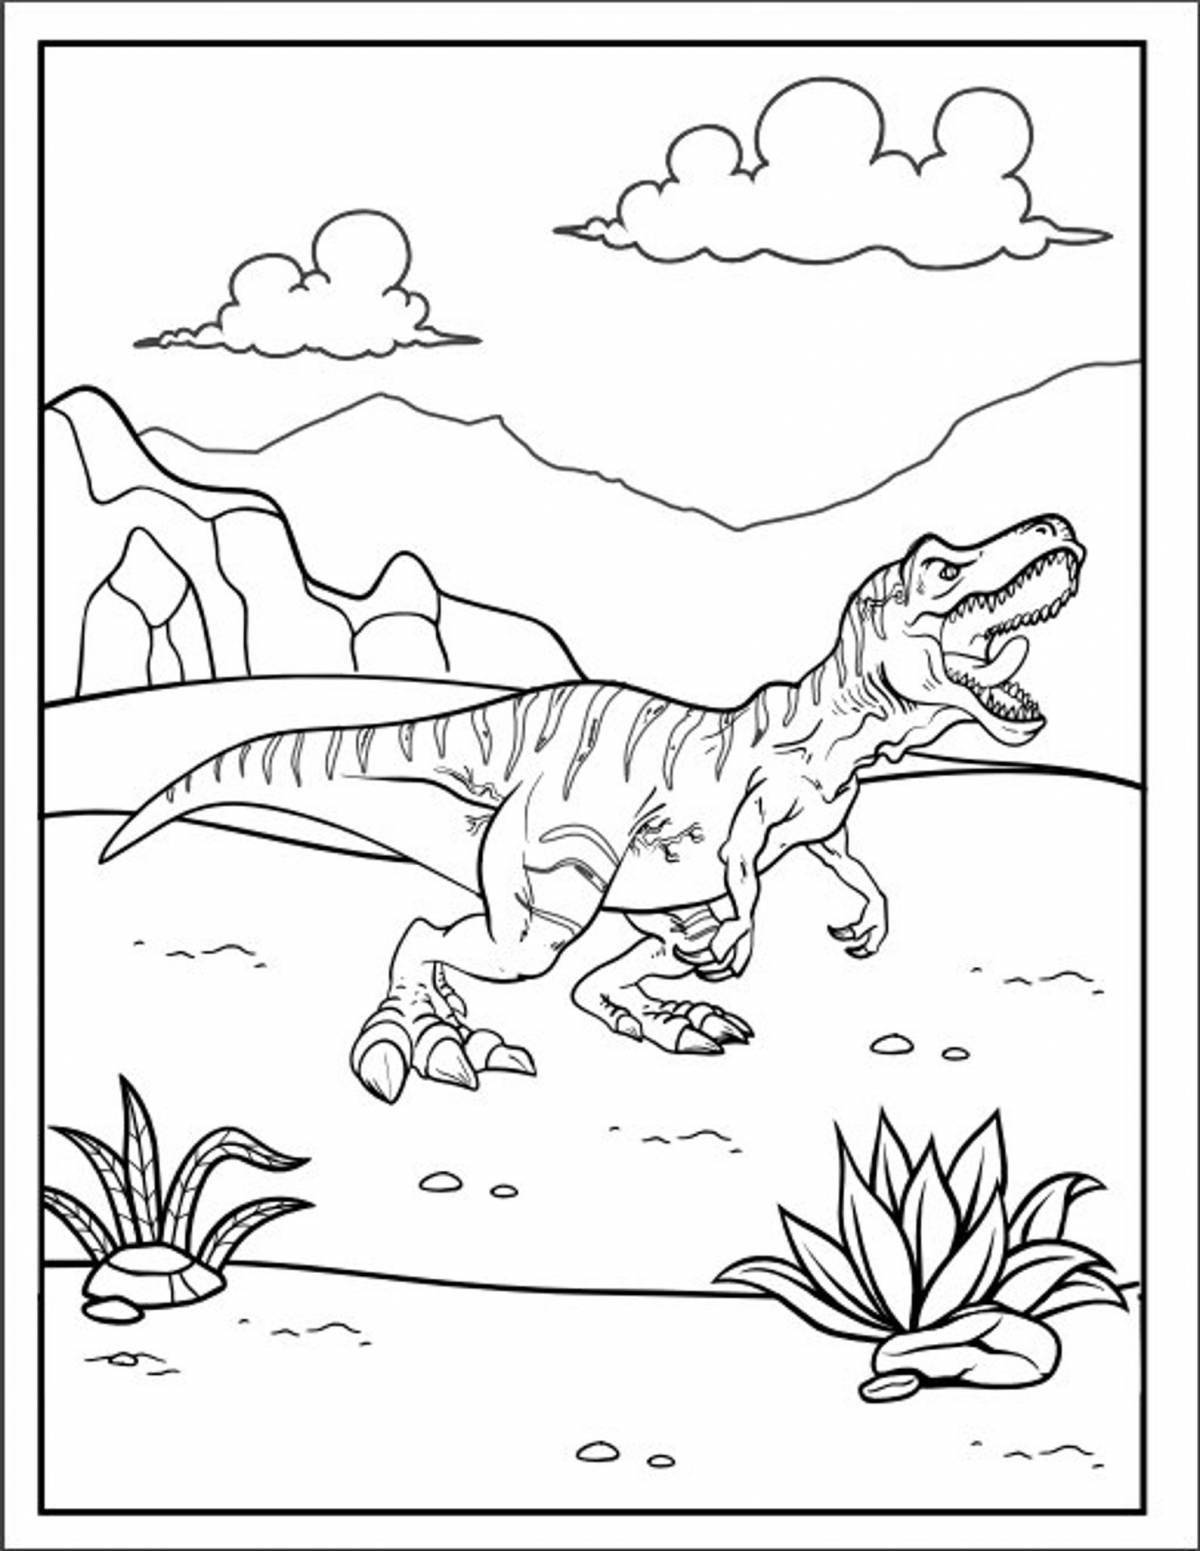 Динозавр гариомикс раскраска